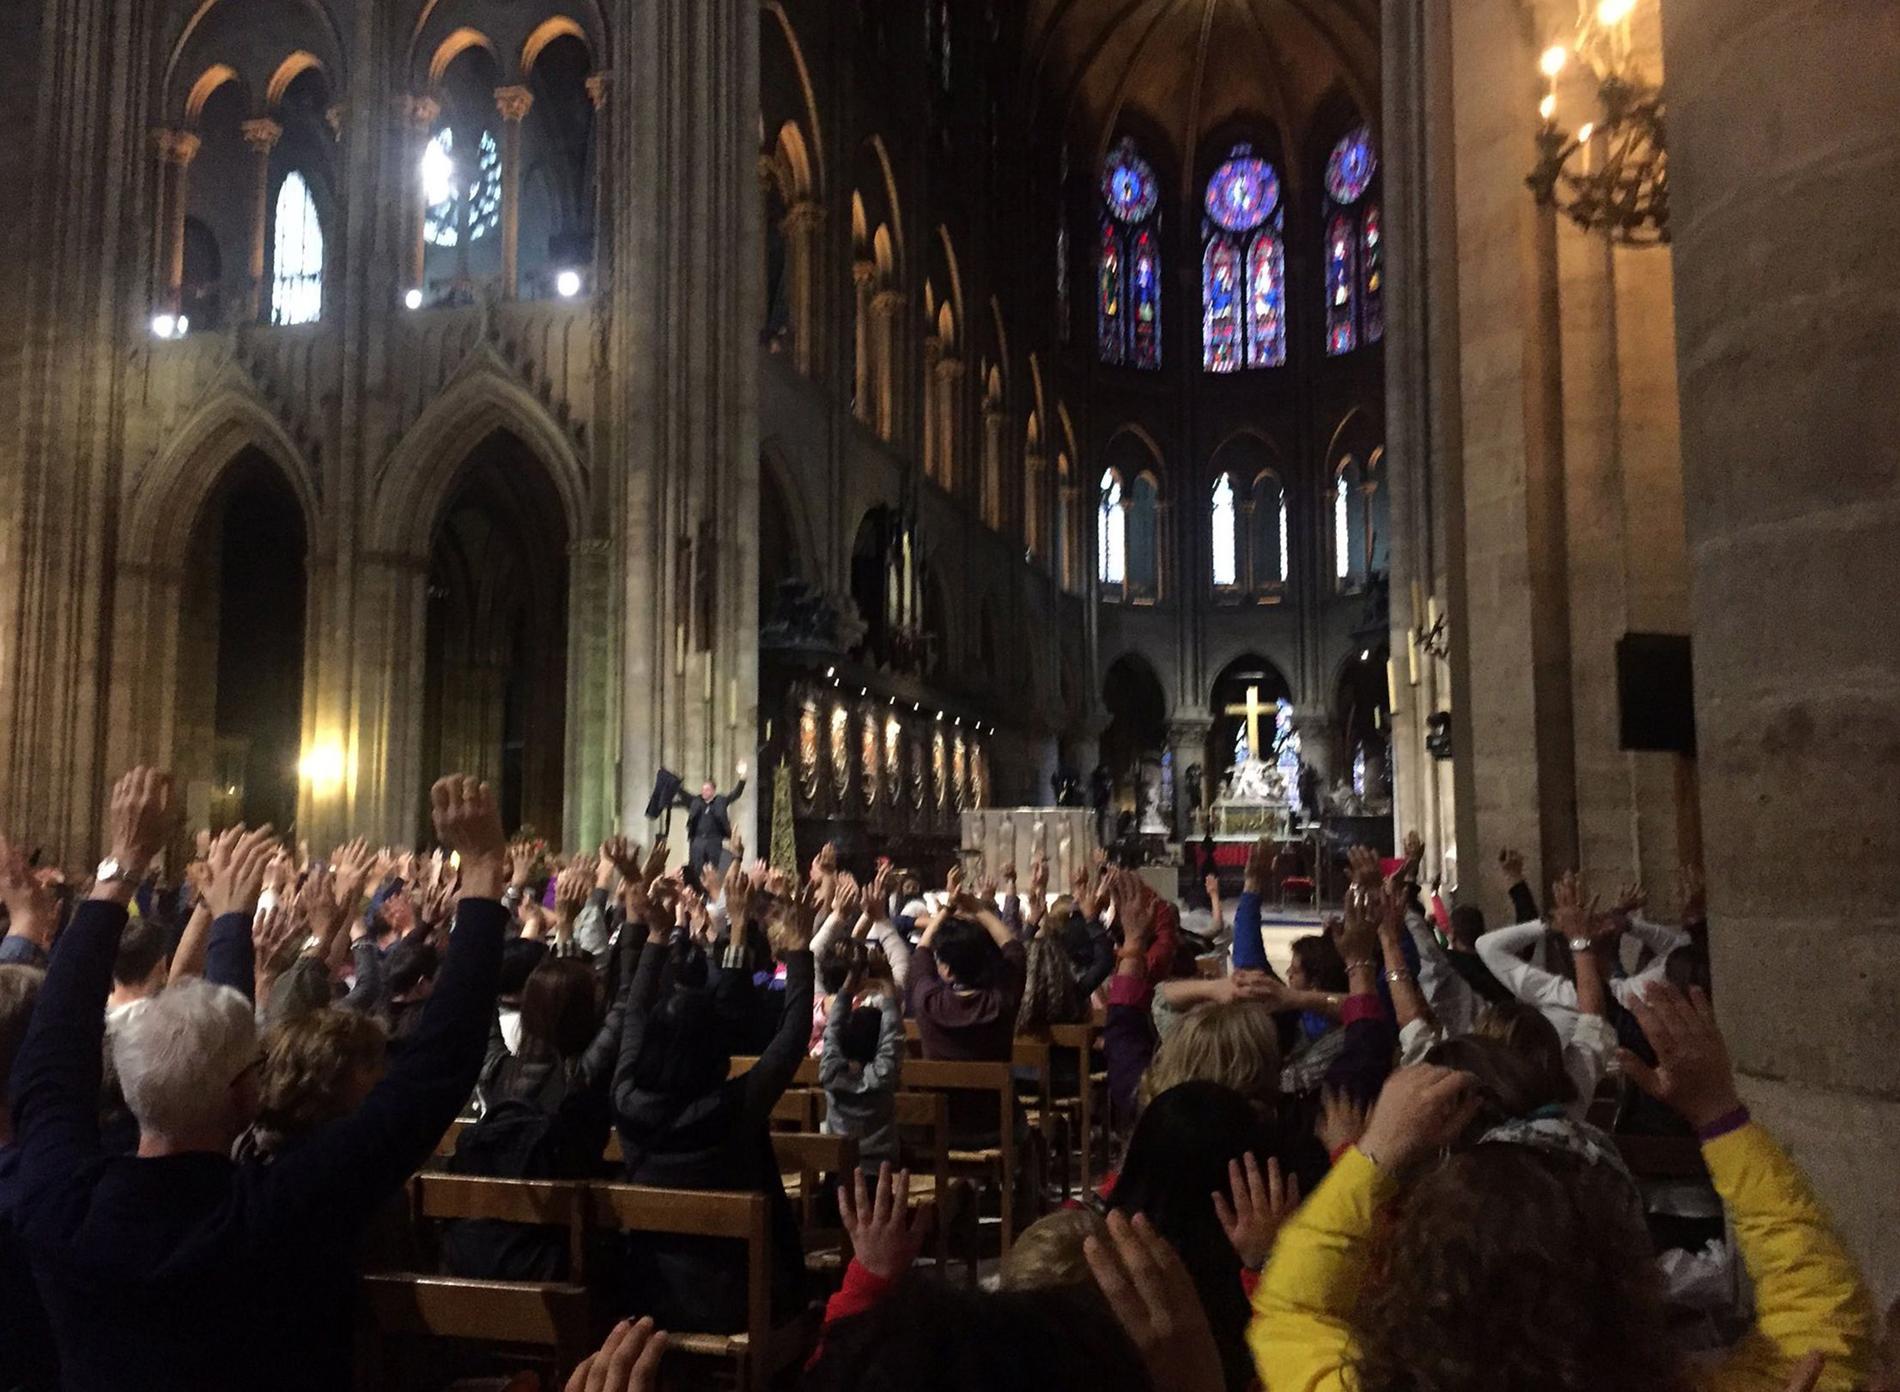 Människor inne i katedralen höjer armarna under pågående drama på polisens uppmaning.